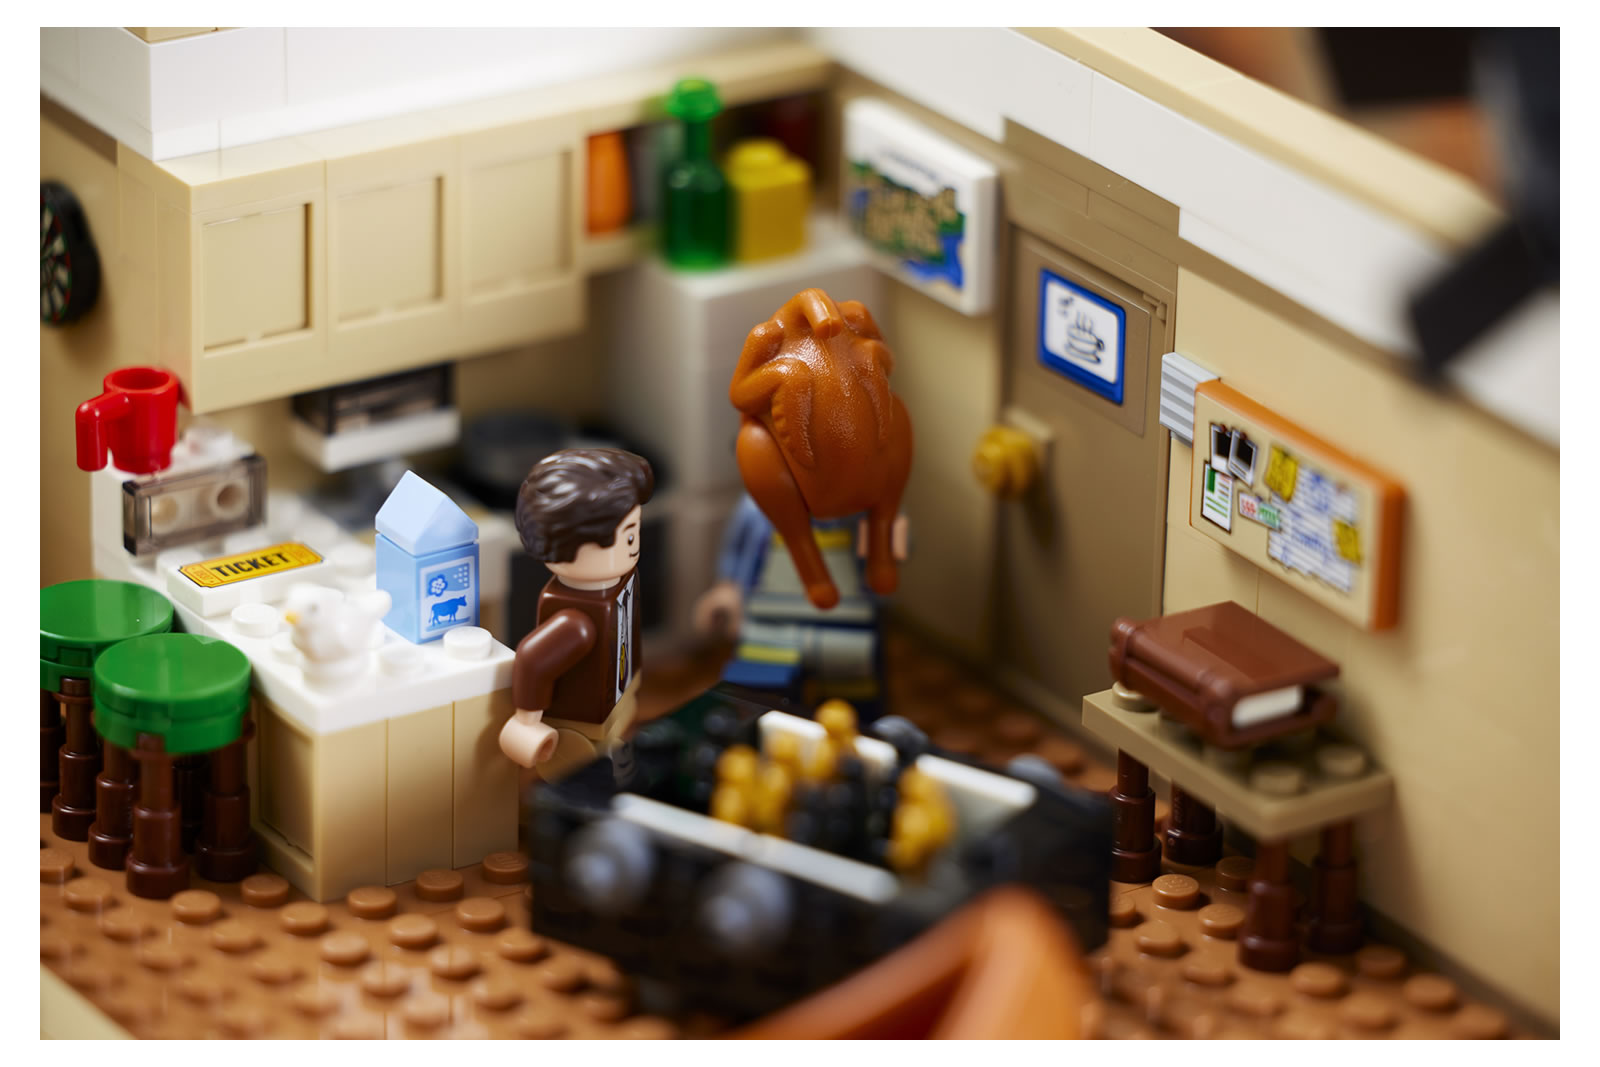 Friends ». LEGO va sortir un kit avec tous les personnages de la série culte